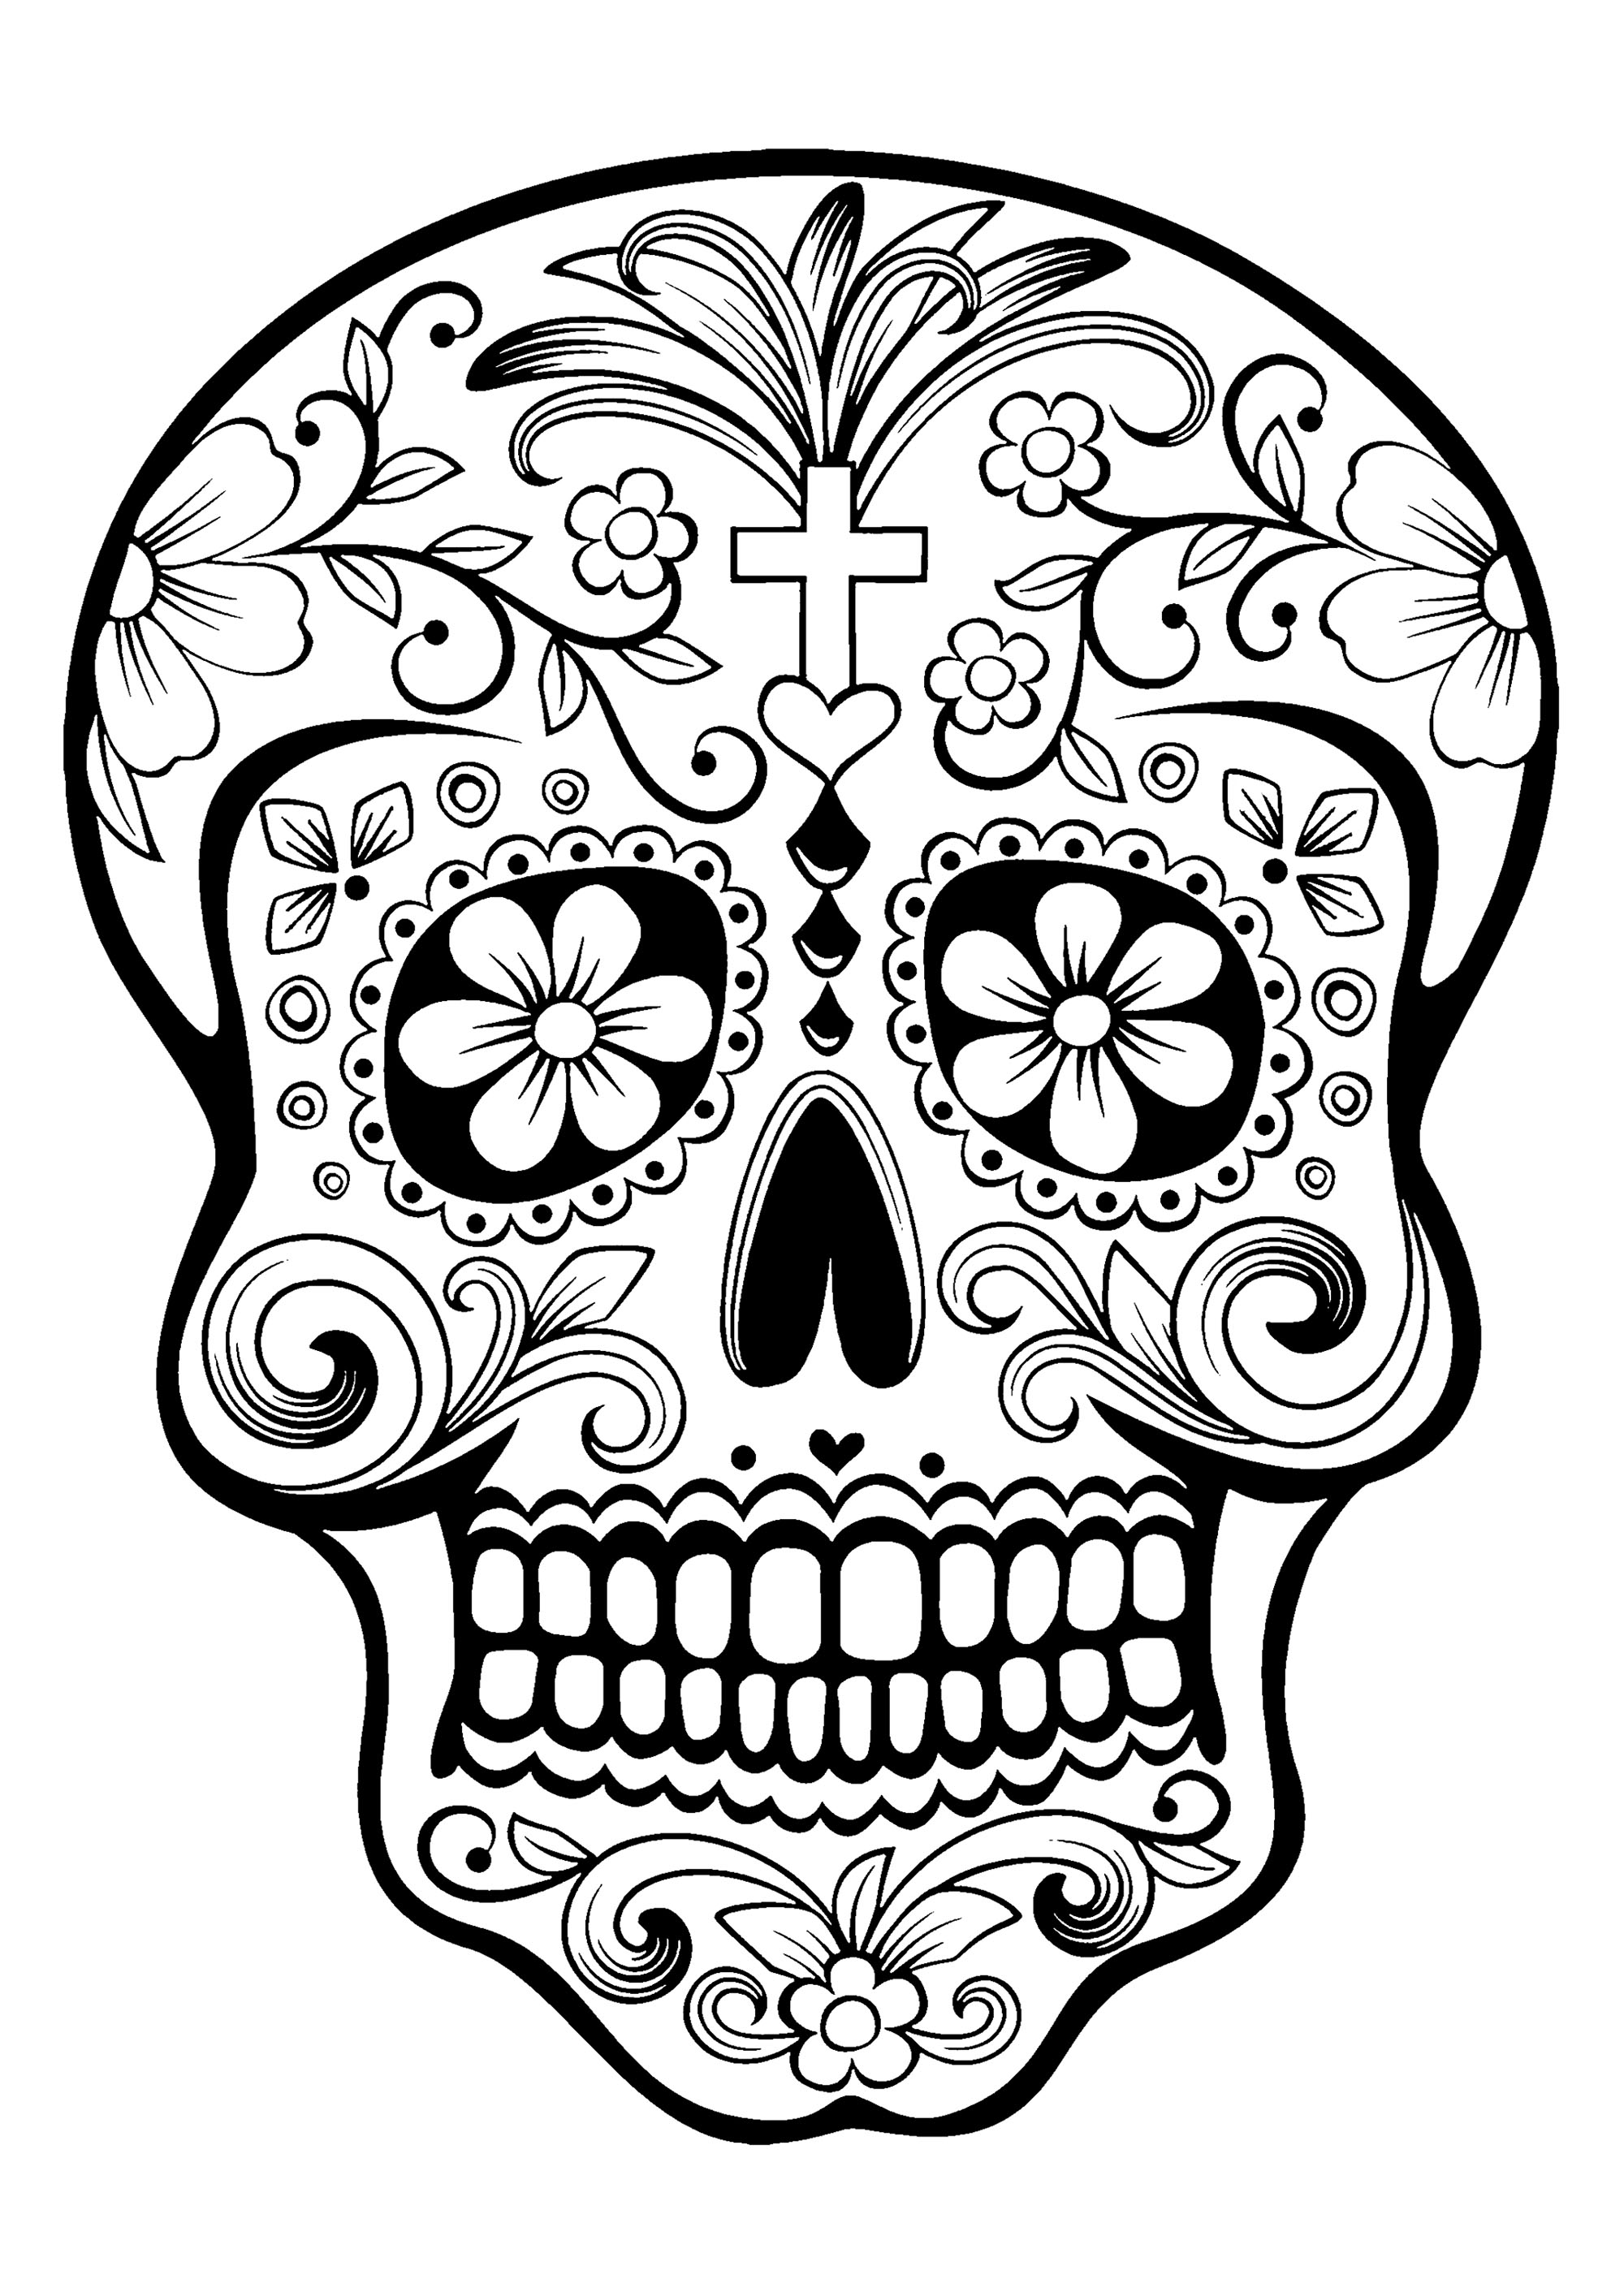 El Día de los Muertos / Day of the dead coloring page : Skull - 1, Artist : Art. Isabelle